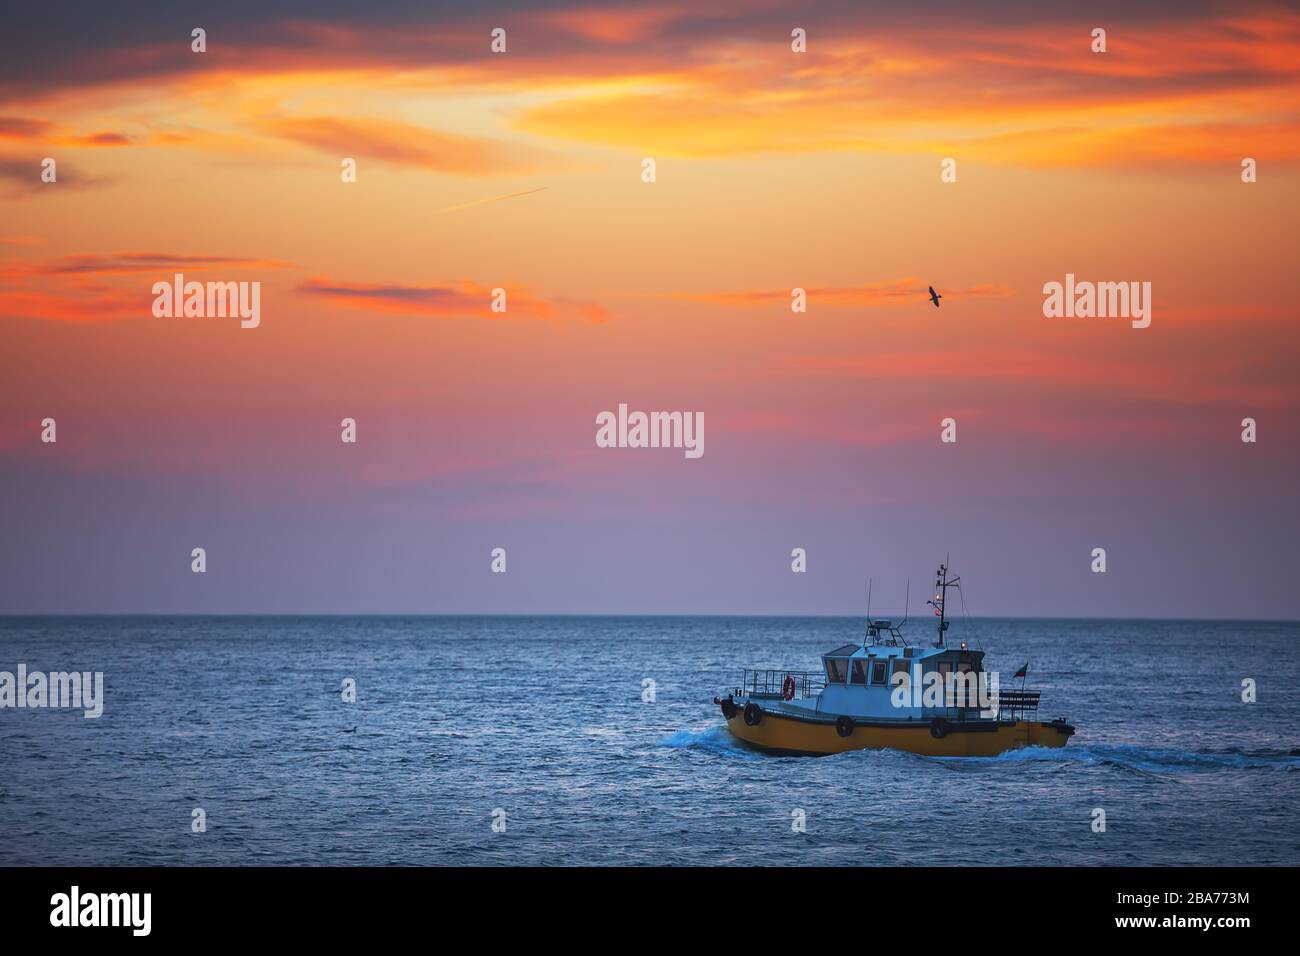 Pattuglia barca a vela all'alba in acqua di mare Foto Stock